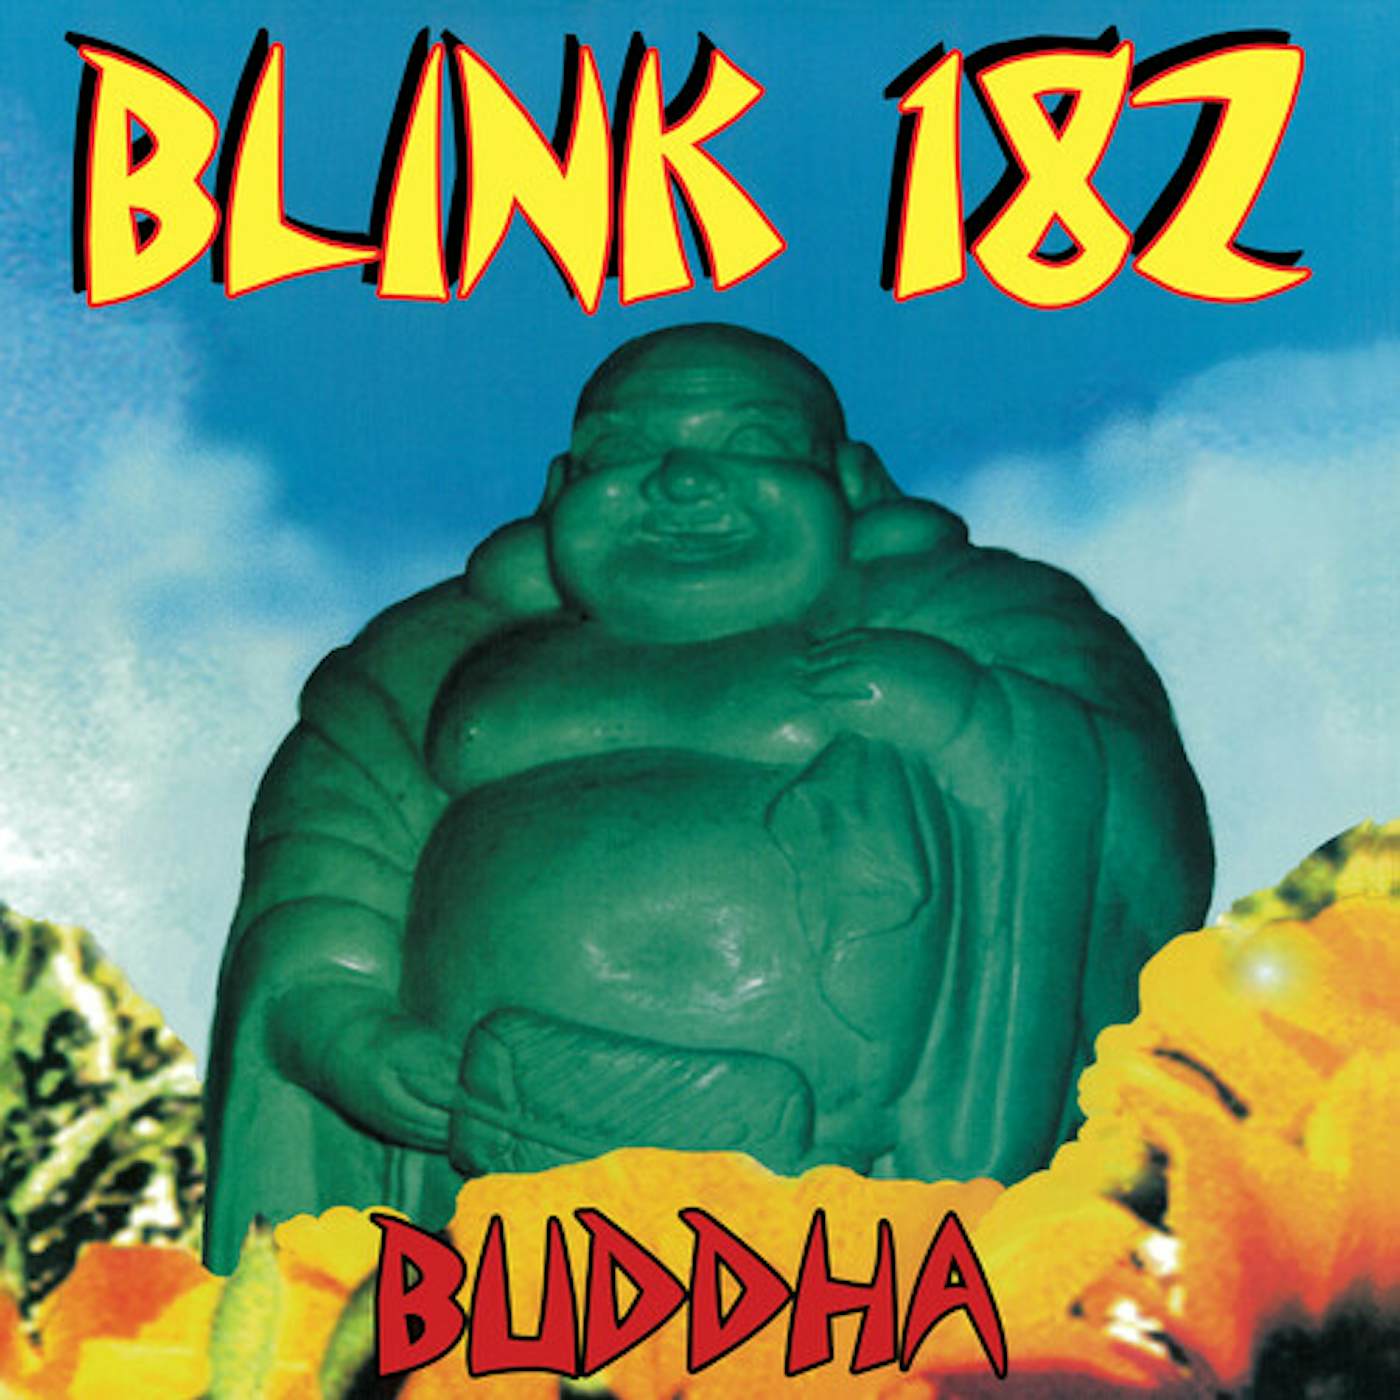 blink-182 BUDDAH CD